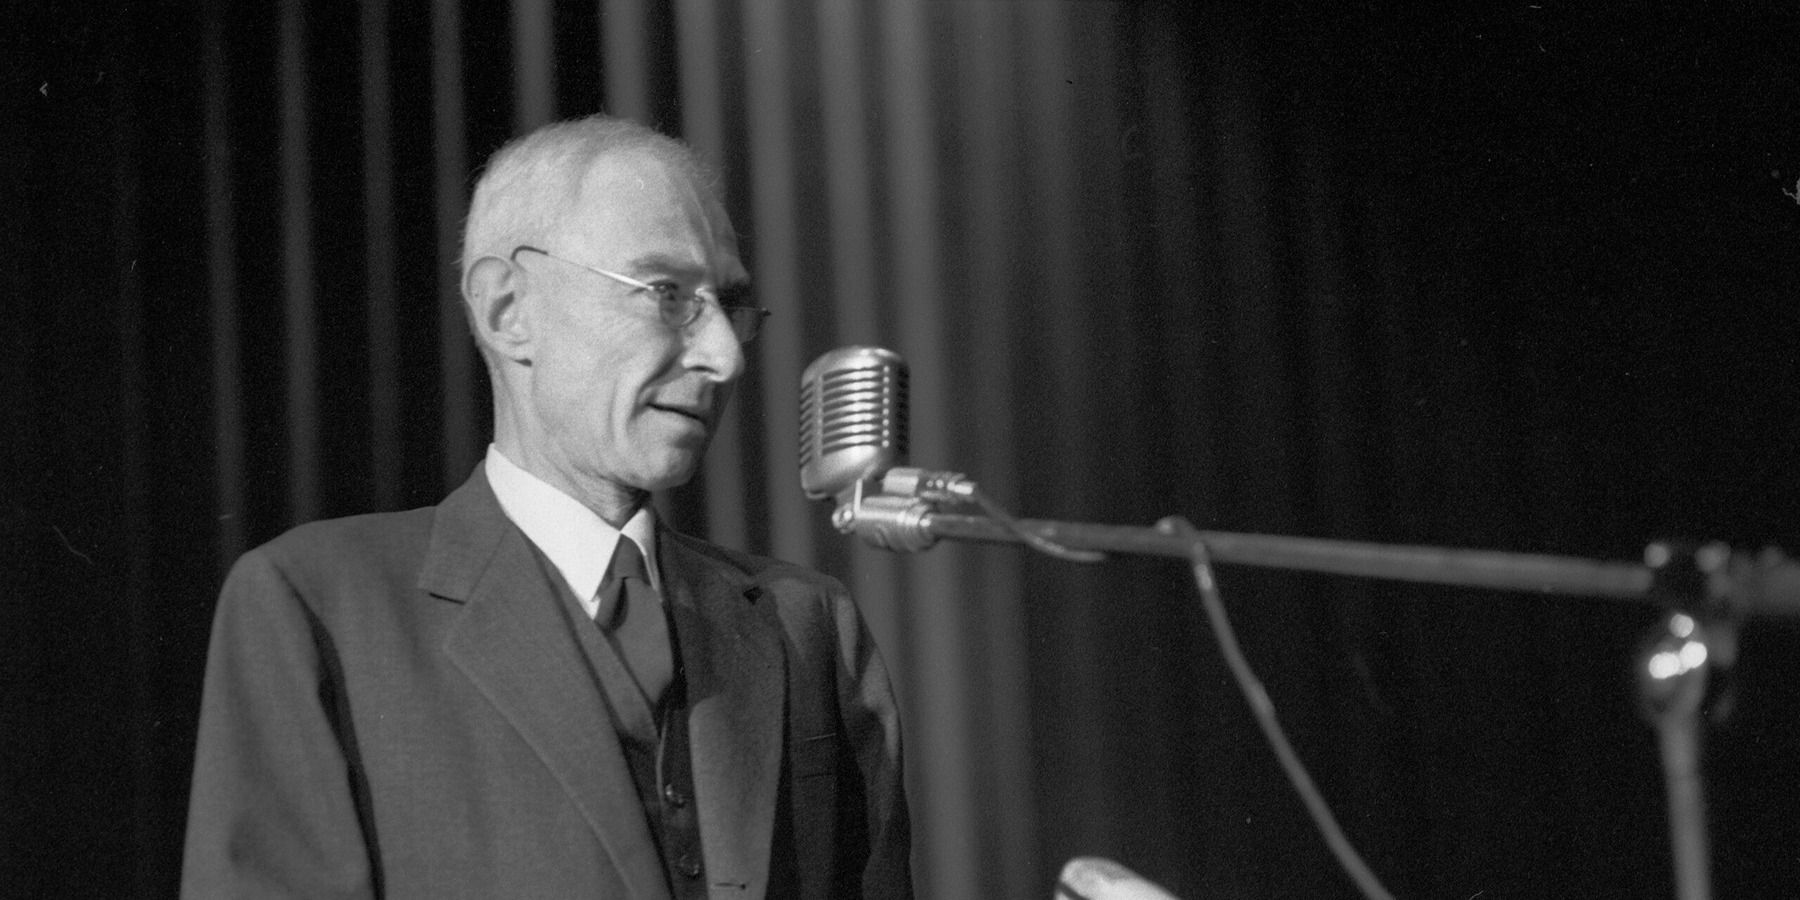 oppenheimer in 1964